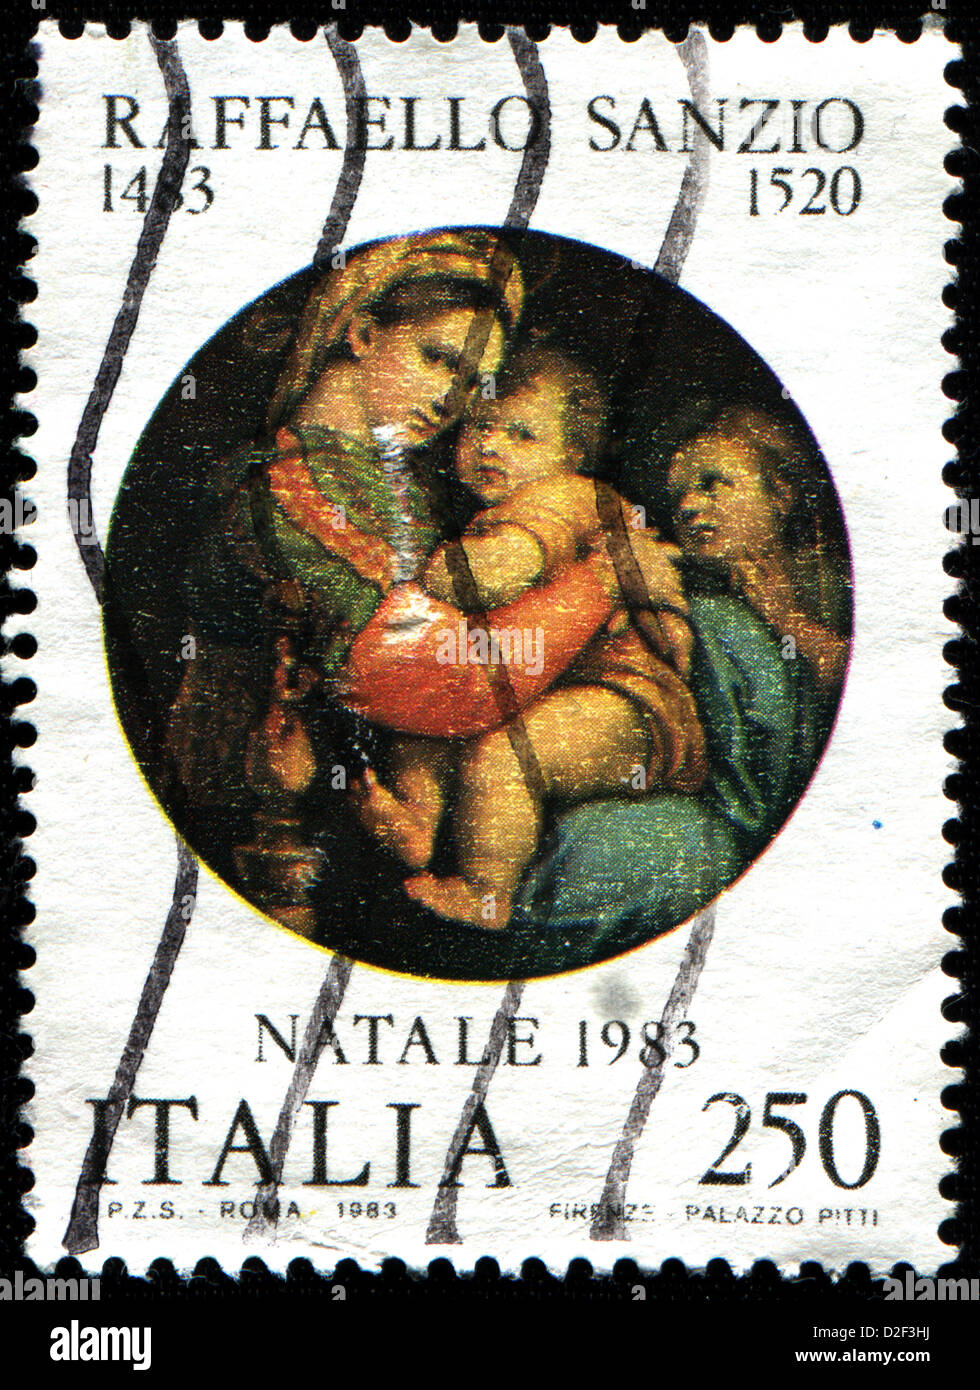 Italie - circa 1983 : timbre imprimé en Italie montre Madonna de la présidence, la peinture de Raphaël, vers 1983 Banque D'Images